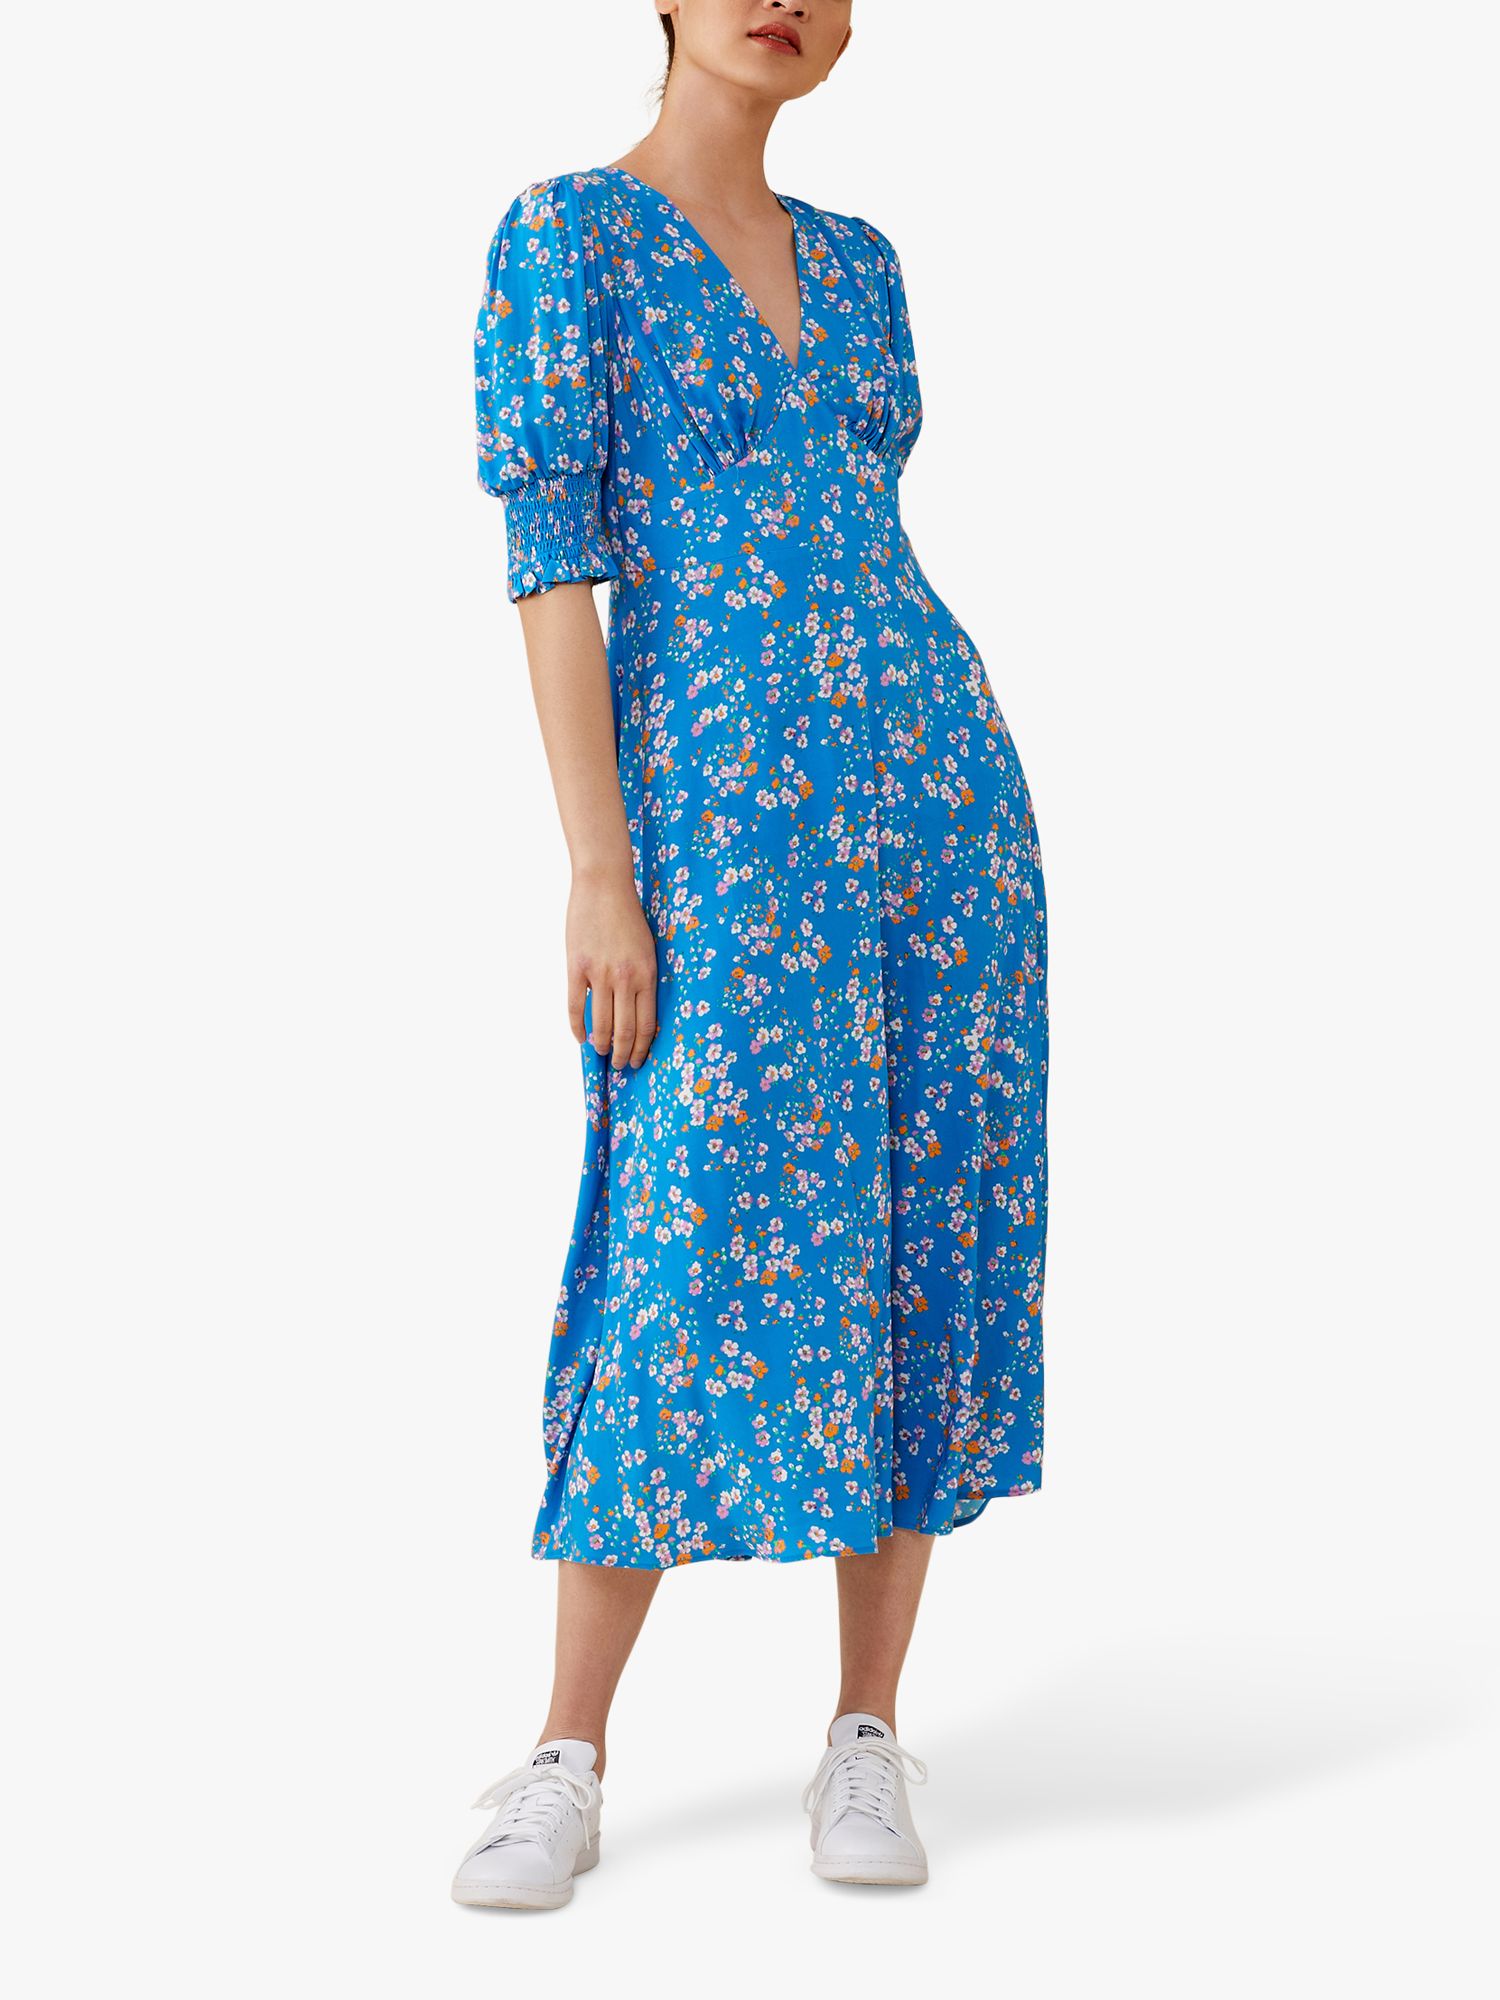 Finery Deena Daisy Print Midi Dress, Blue, 8